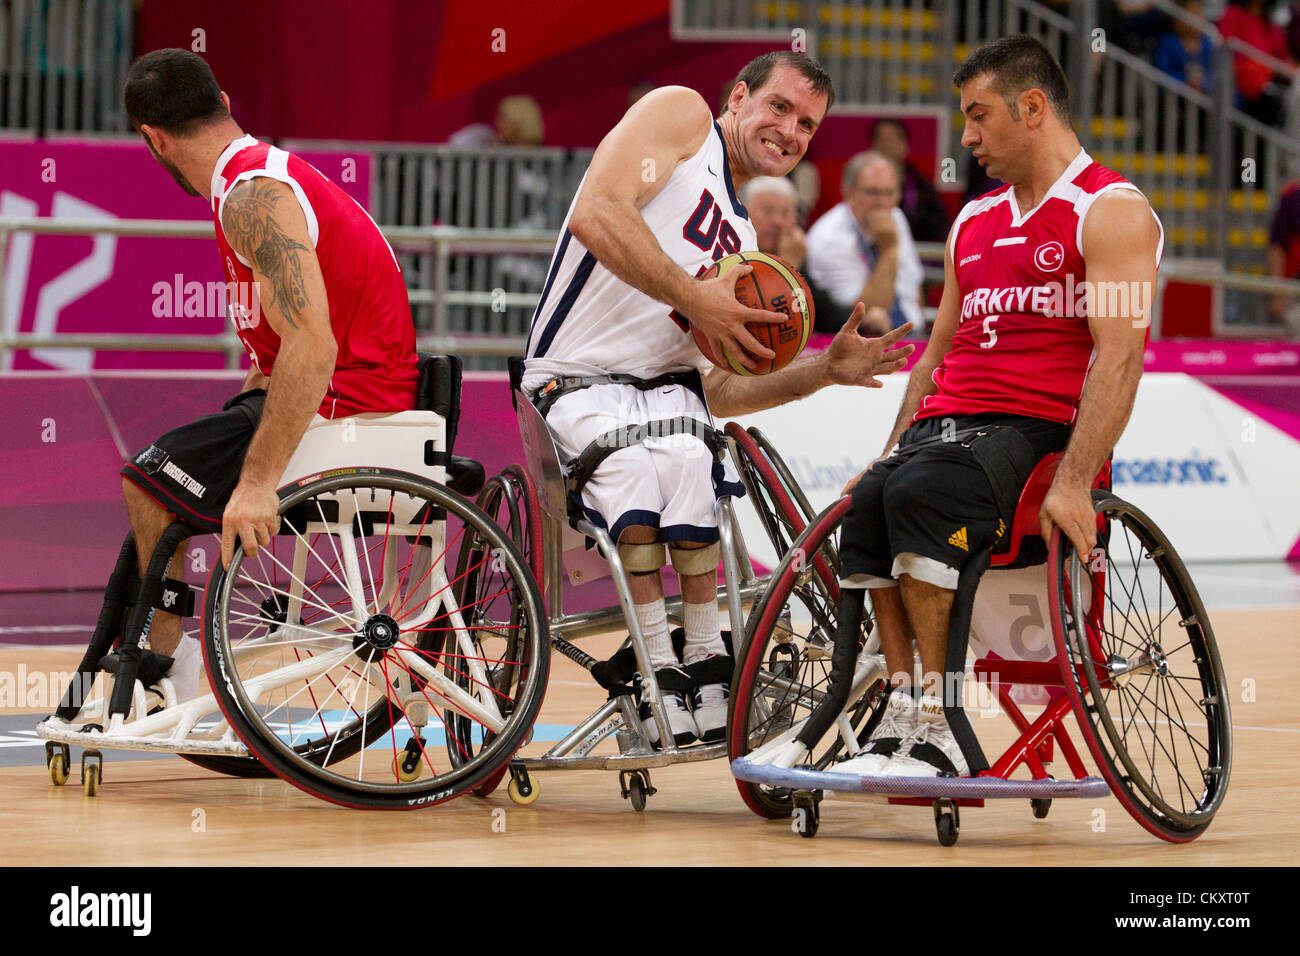 Joshua Turek, aux États-Unis, fait la course entre deux joueurs turcs lors d'un match de basket-ball en fauteuil roulant aux Jeux paralympiques de Londres de 2012. Banque D'Images